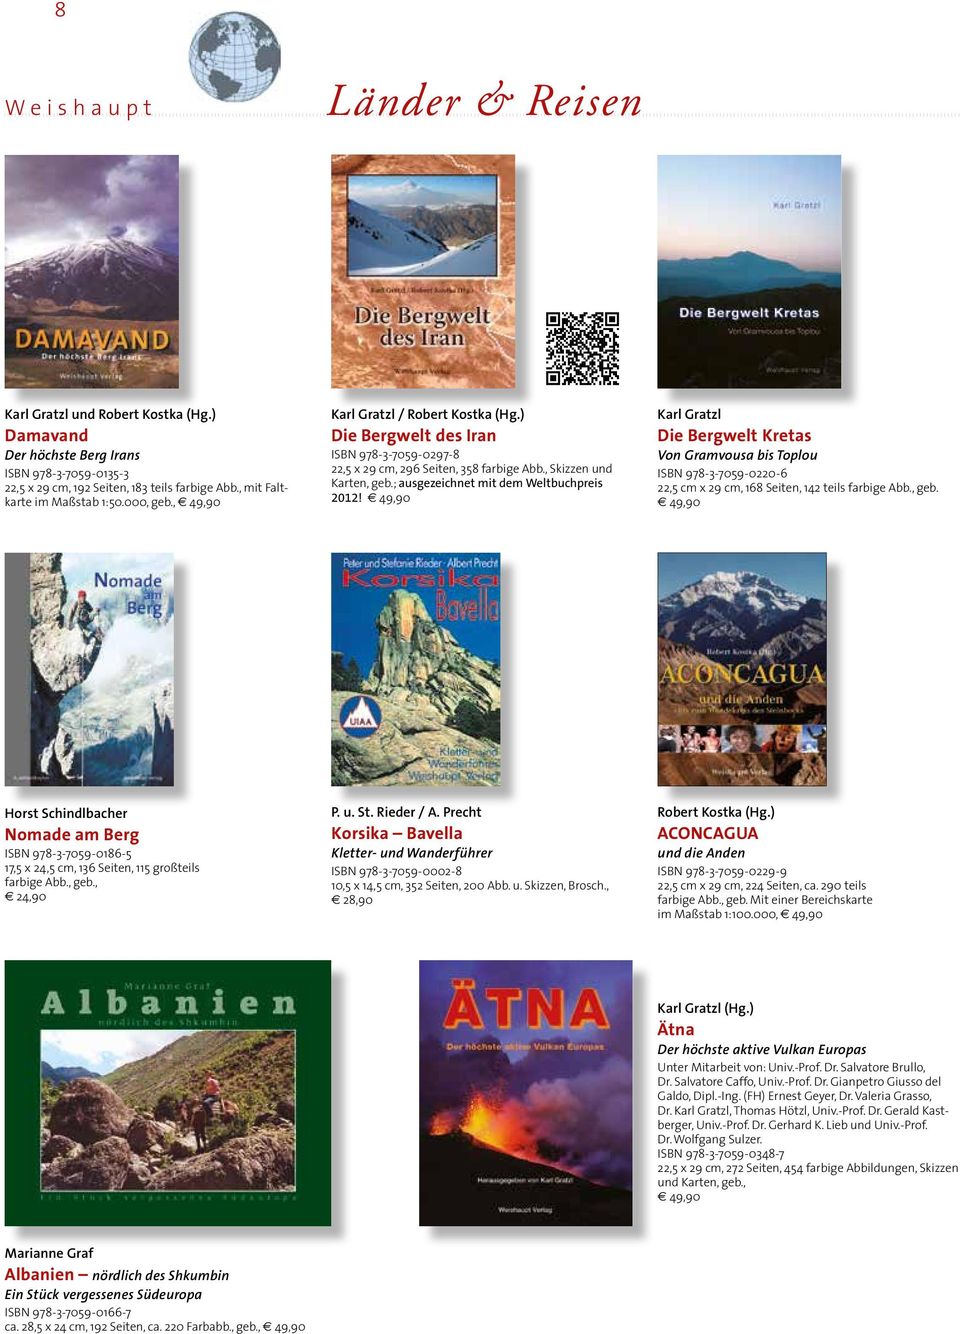 Karl Gratzl Die Bergwelt Kretas Von Gramvousa bis Toplou ISBN 978-3-7059-0220-6 22,5 cm x 29 cm, 168 Seiten, 142 teils farbige Abb., geb.